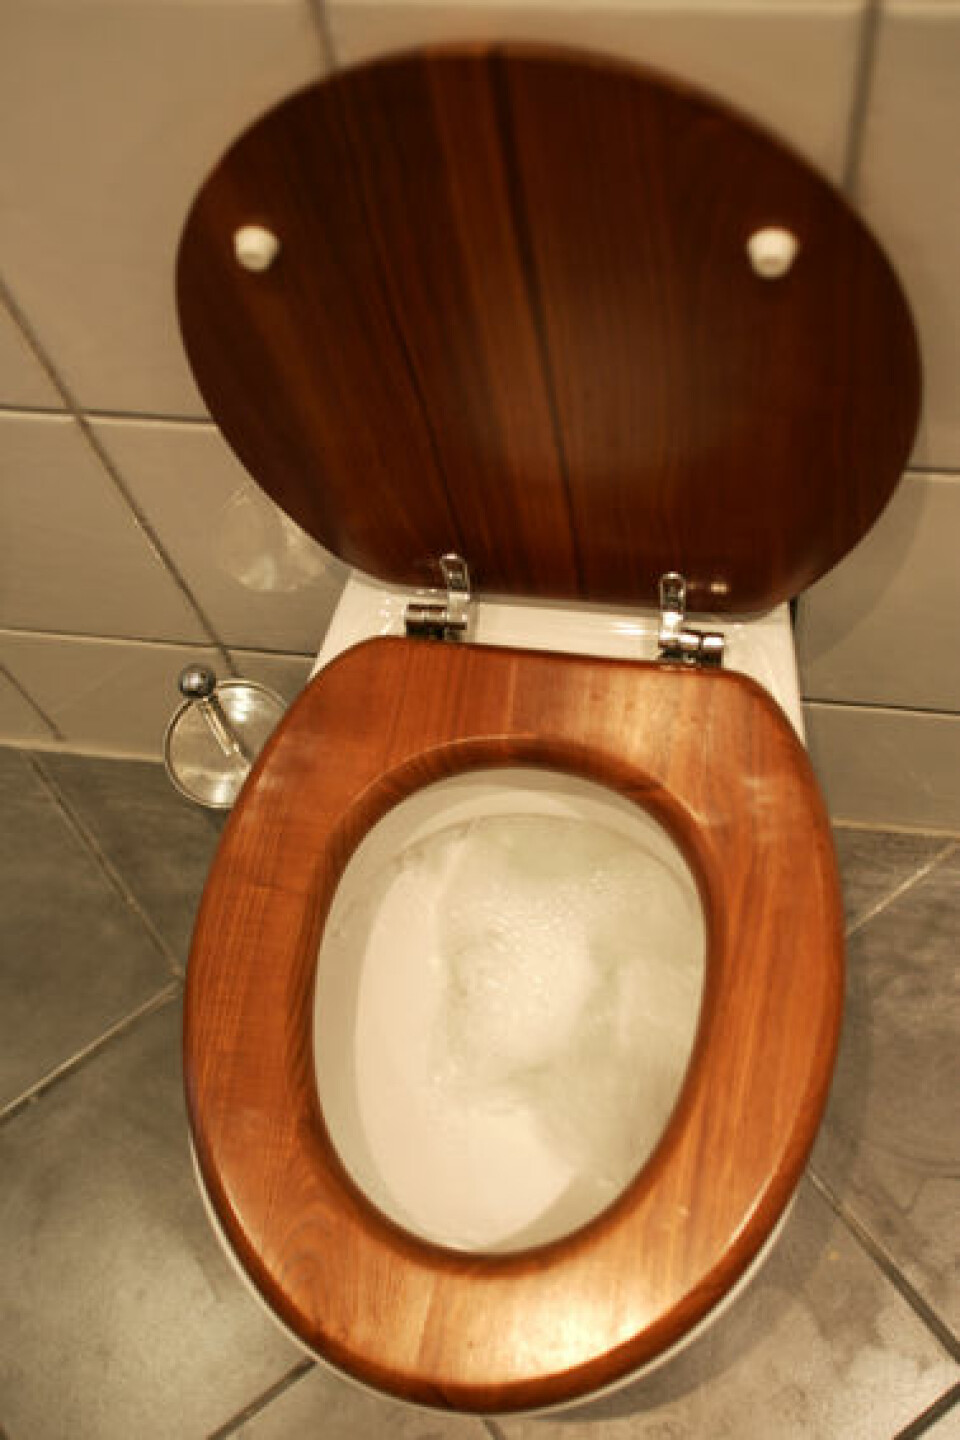 'Svenske forskere har tatt patent på et toalett som skiller ut fosfor fra urin og avføring. Illustrasjonsfoto: www.colourbox.no'